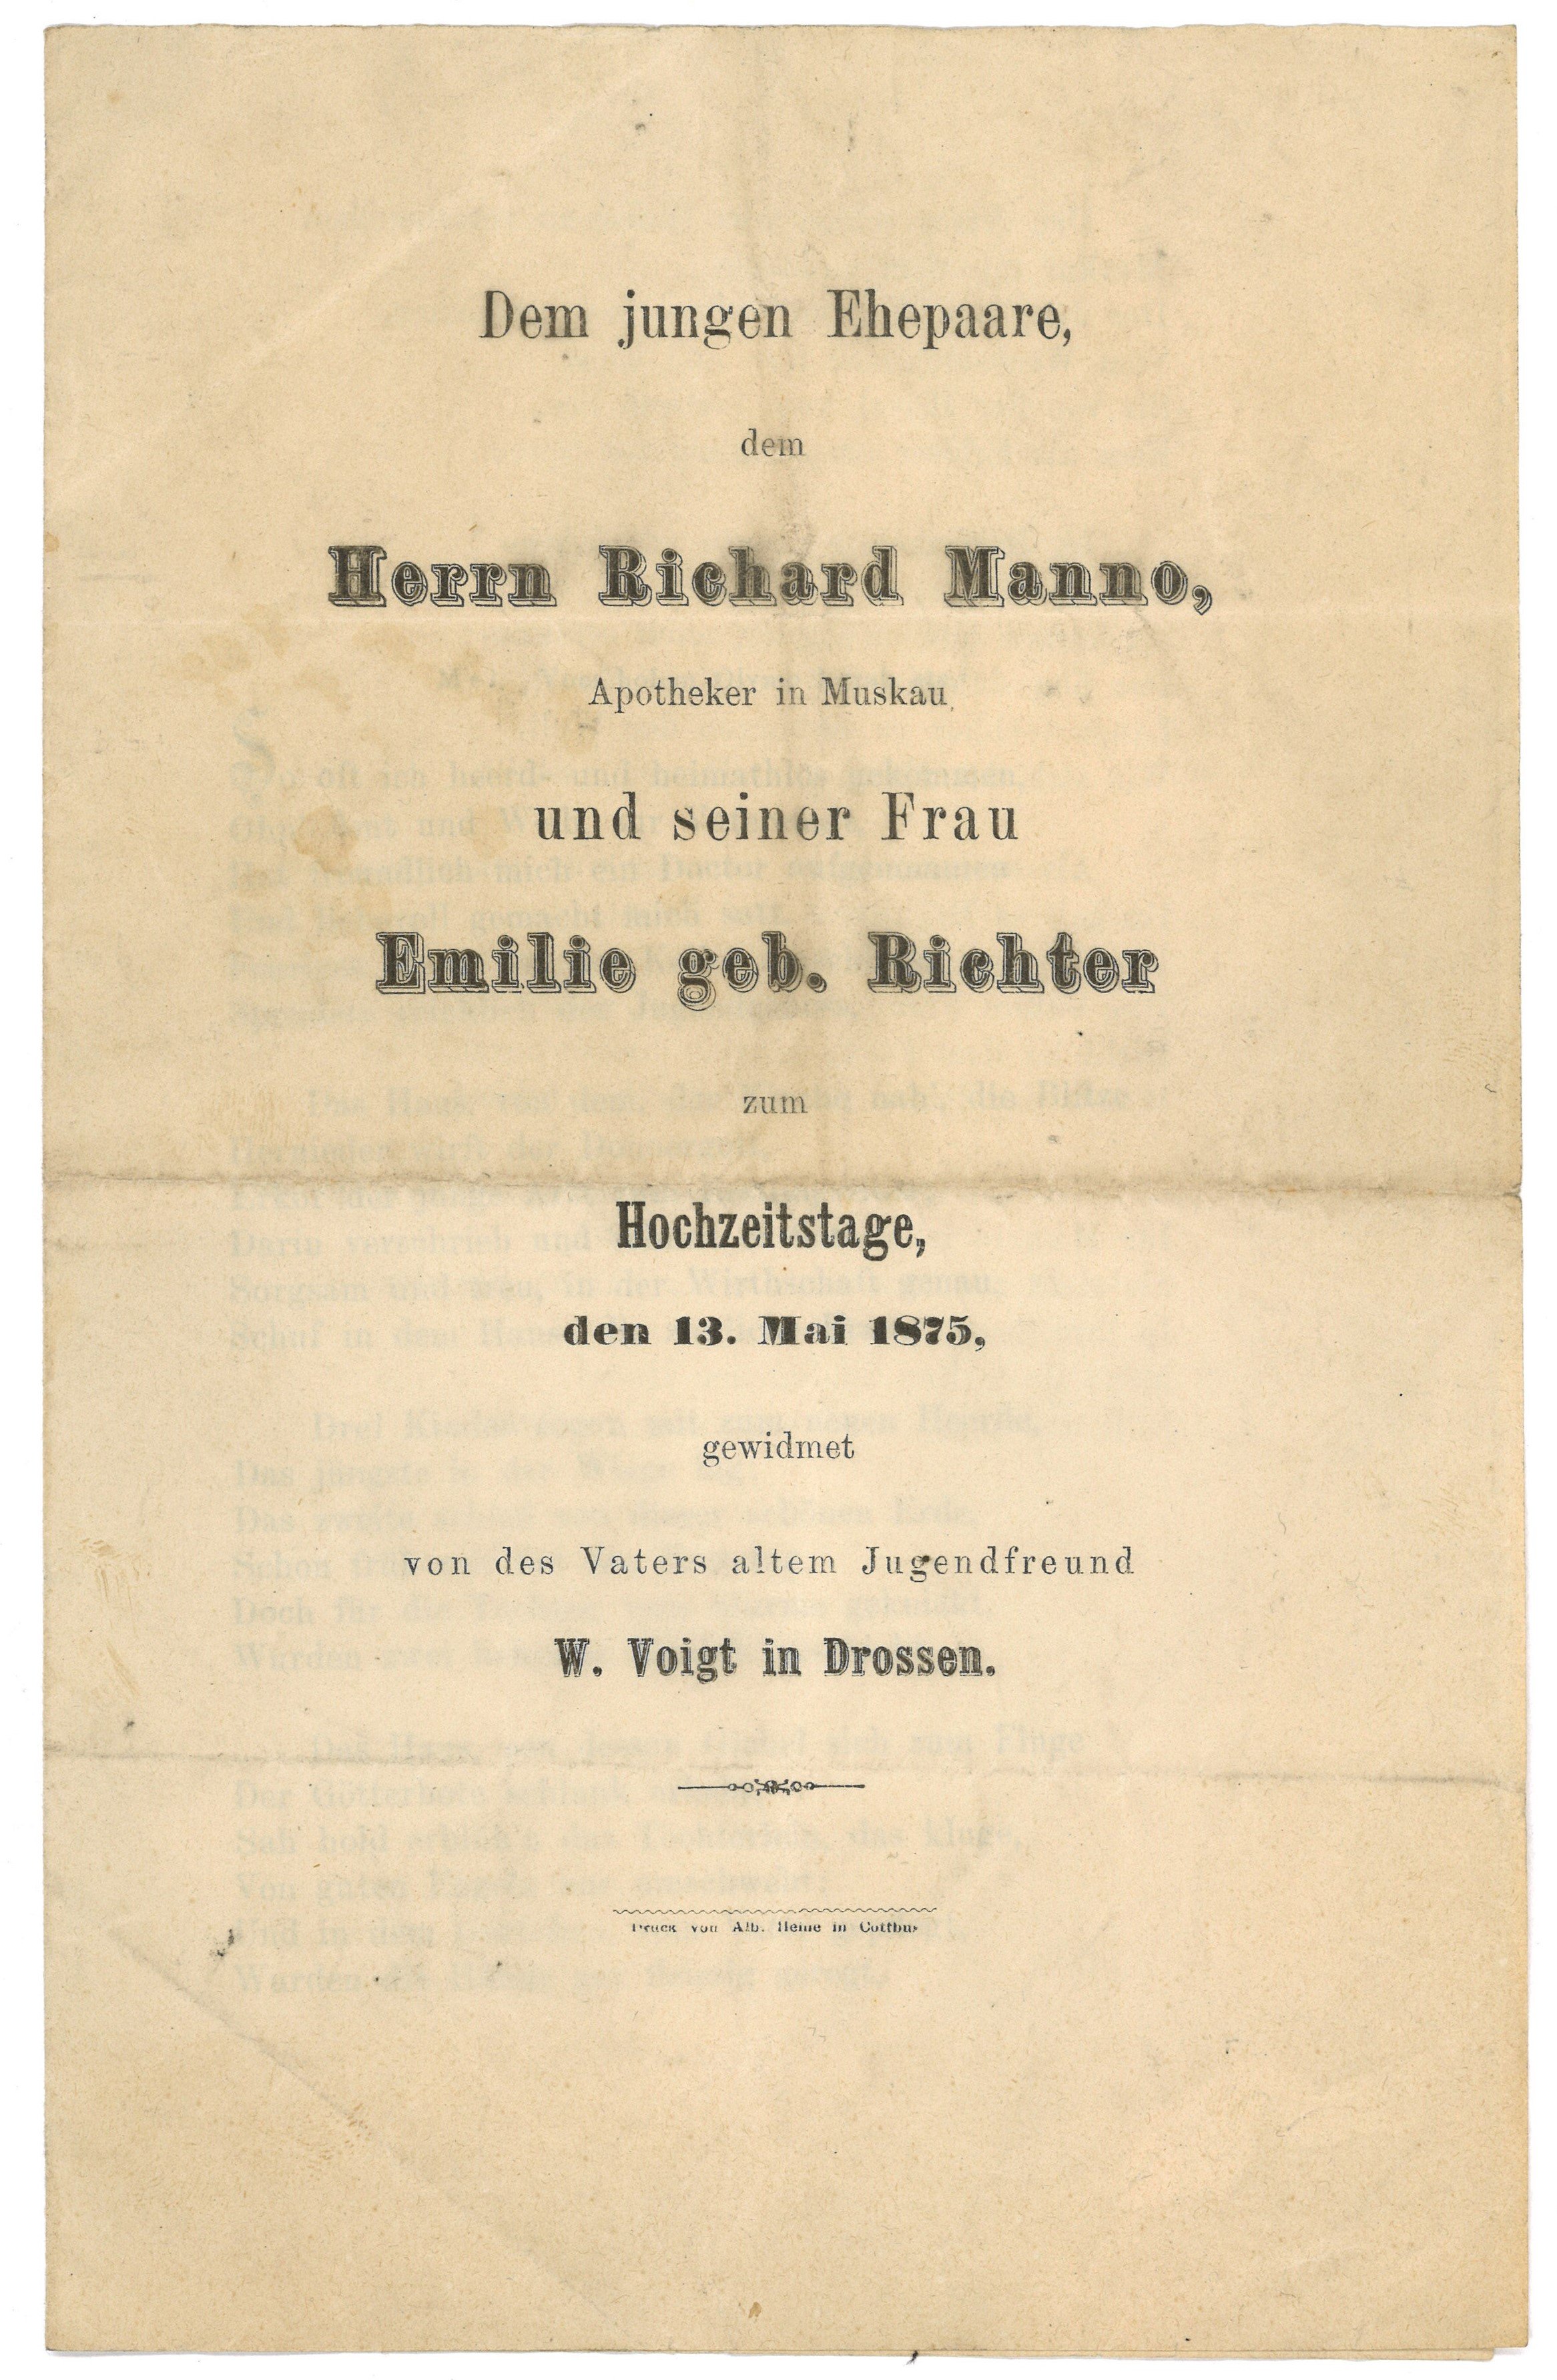 Glückwunschlied von W. Voigt in Drossen zur Hochzeit von Apotheker Richard Manno und Emilie Richter 1875 (Landesgeschichtliche Vereinigung für die Mark Brandenburg e.V., Archiv CC BY)